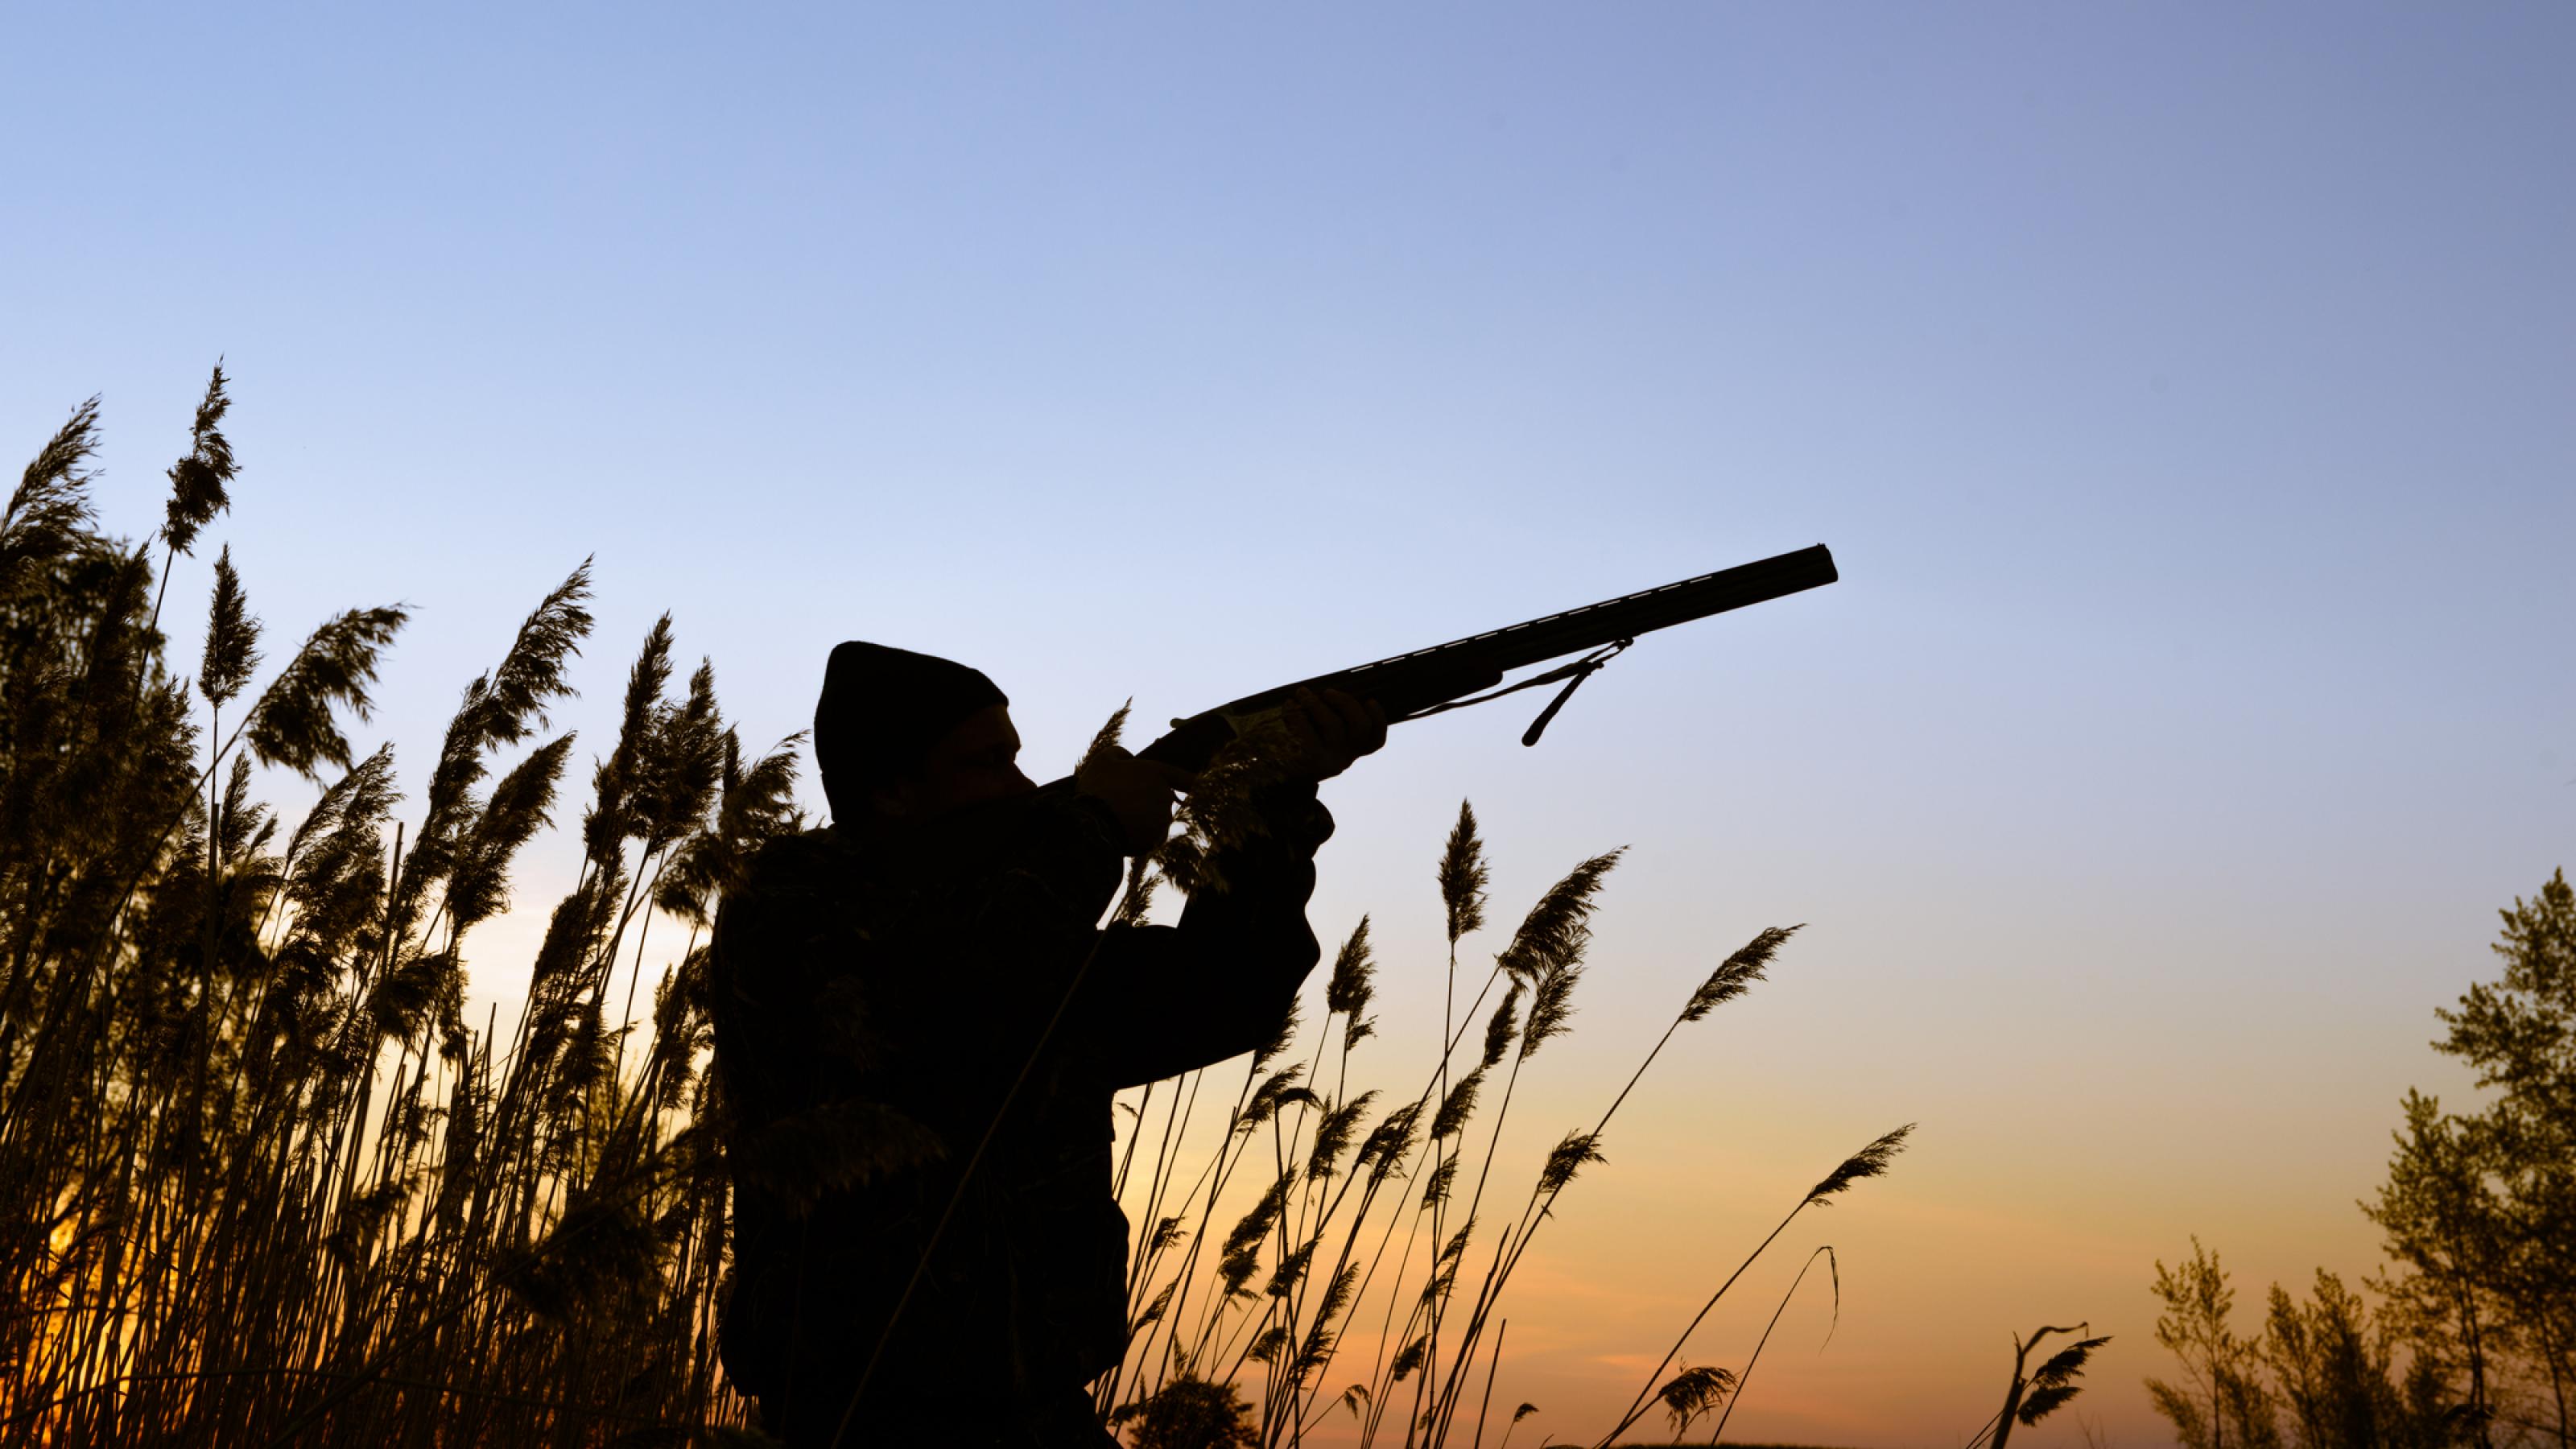 Das Bild zeigt einen Jäger im Schilf im Abendlicht, der mit einem Schrotgewehr in Richtung Himmel zielt.